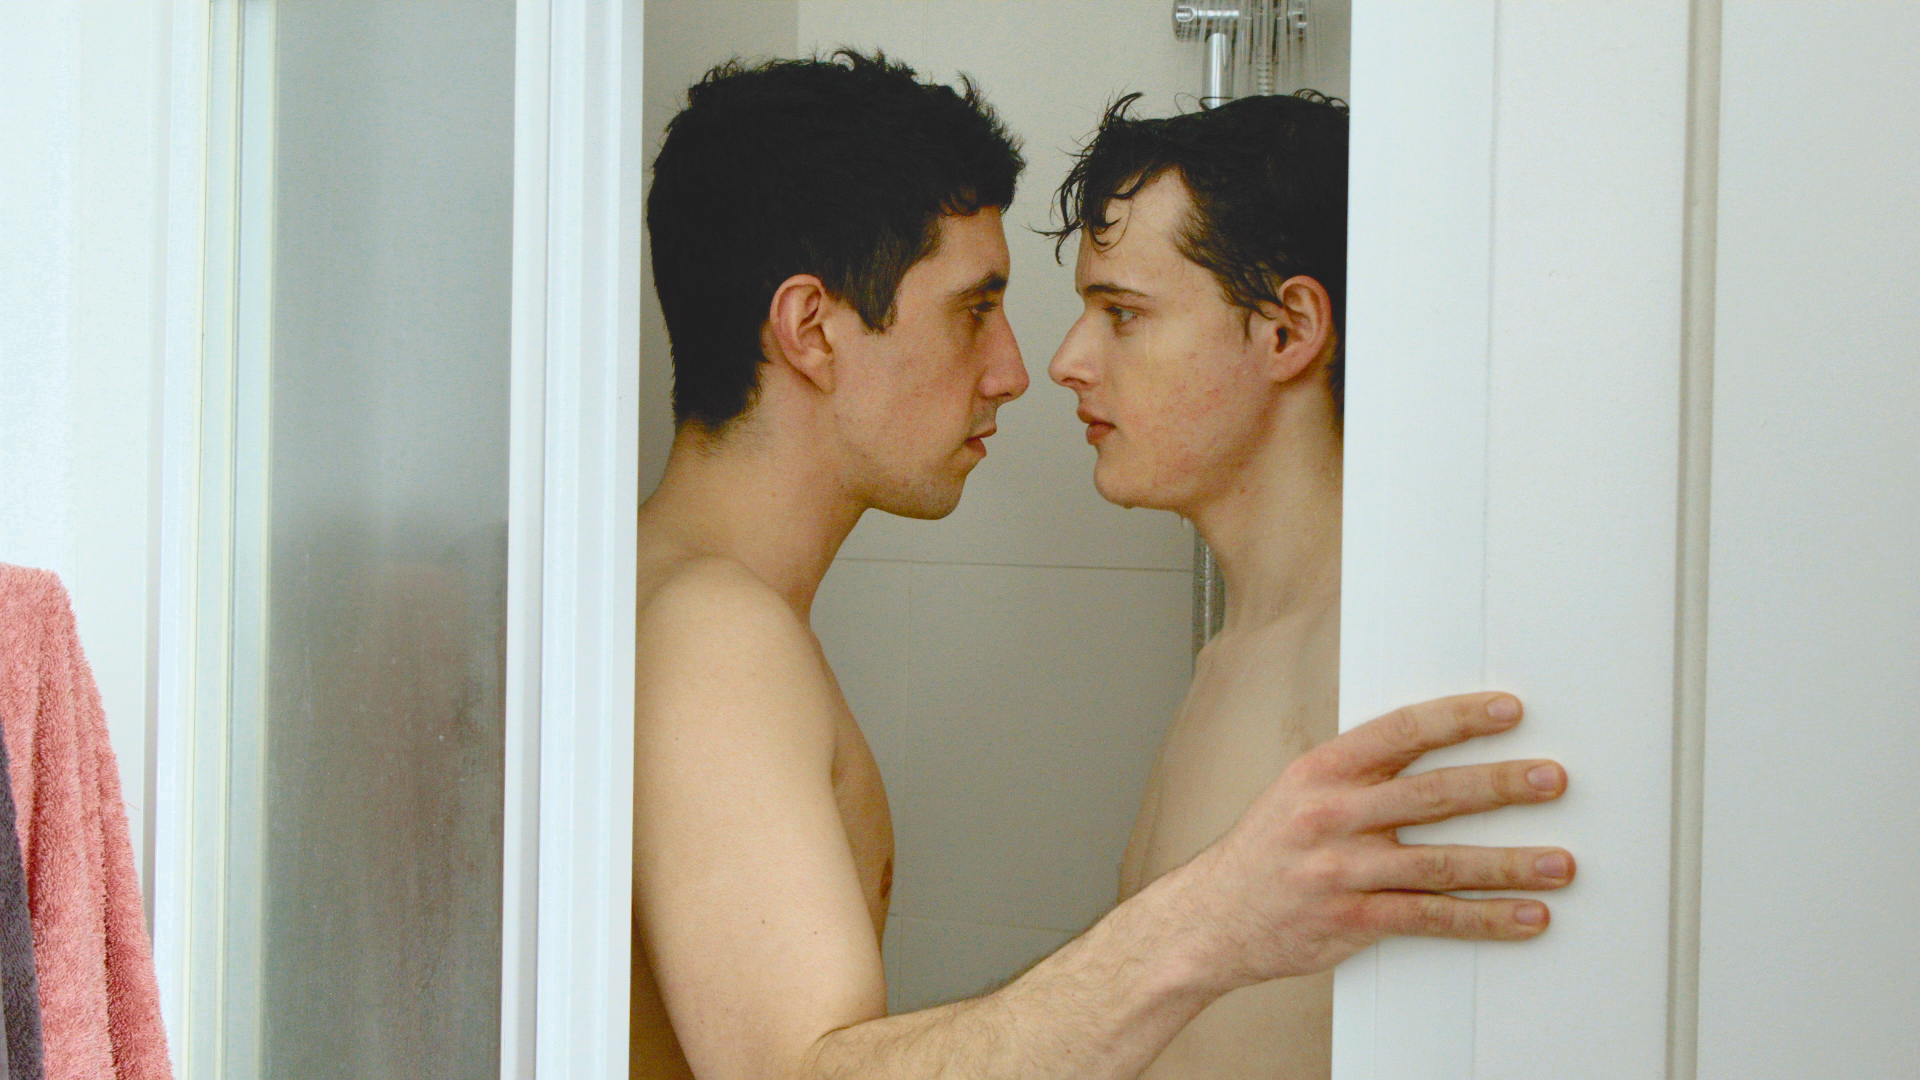 короткометражный фильм про геев смотреть онлайн фото 66